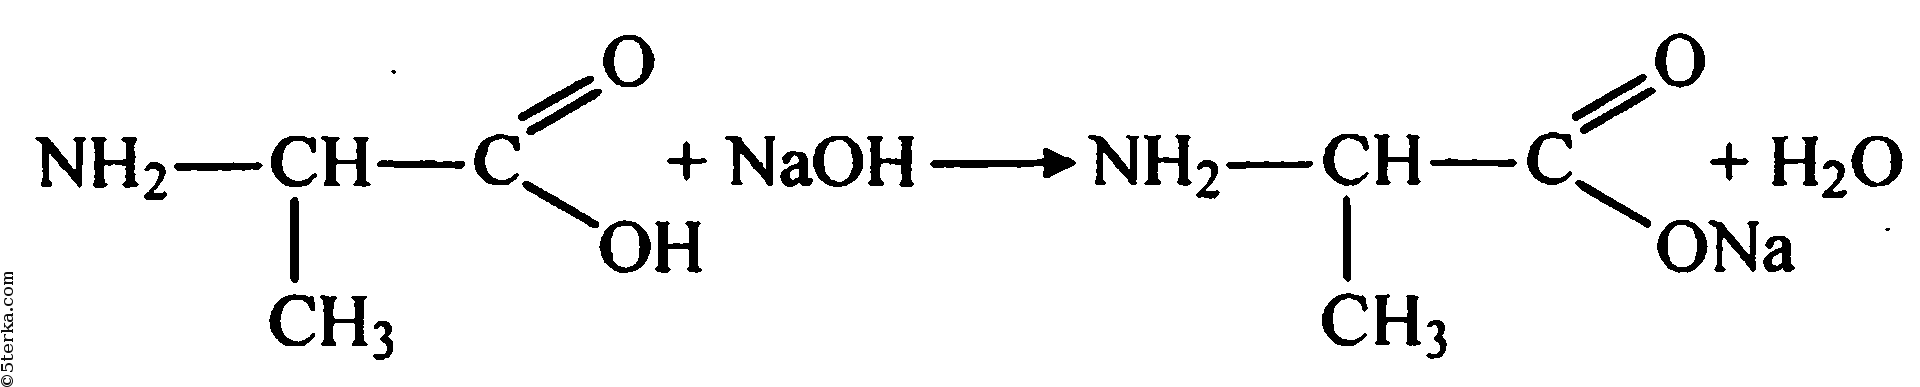 Уравнения реакций характеризующие свойства сульфата меди ii